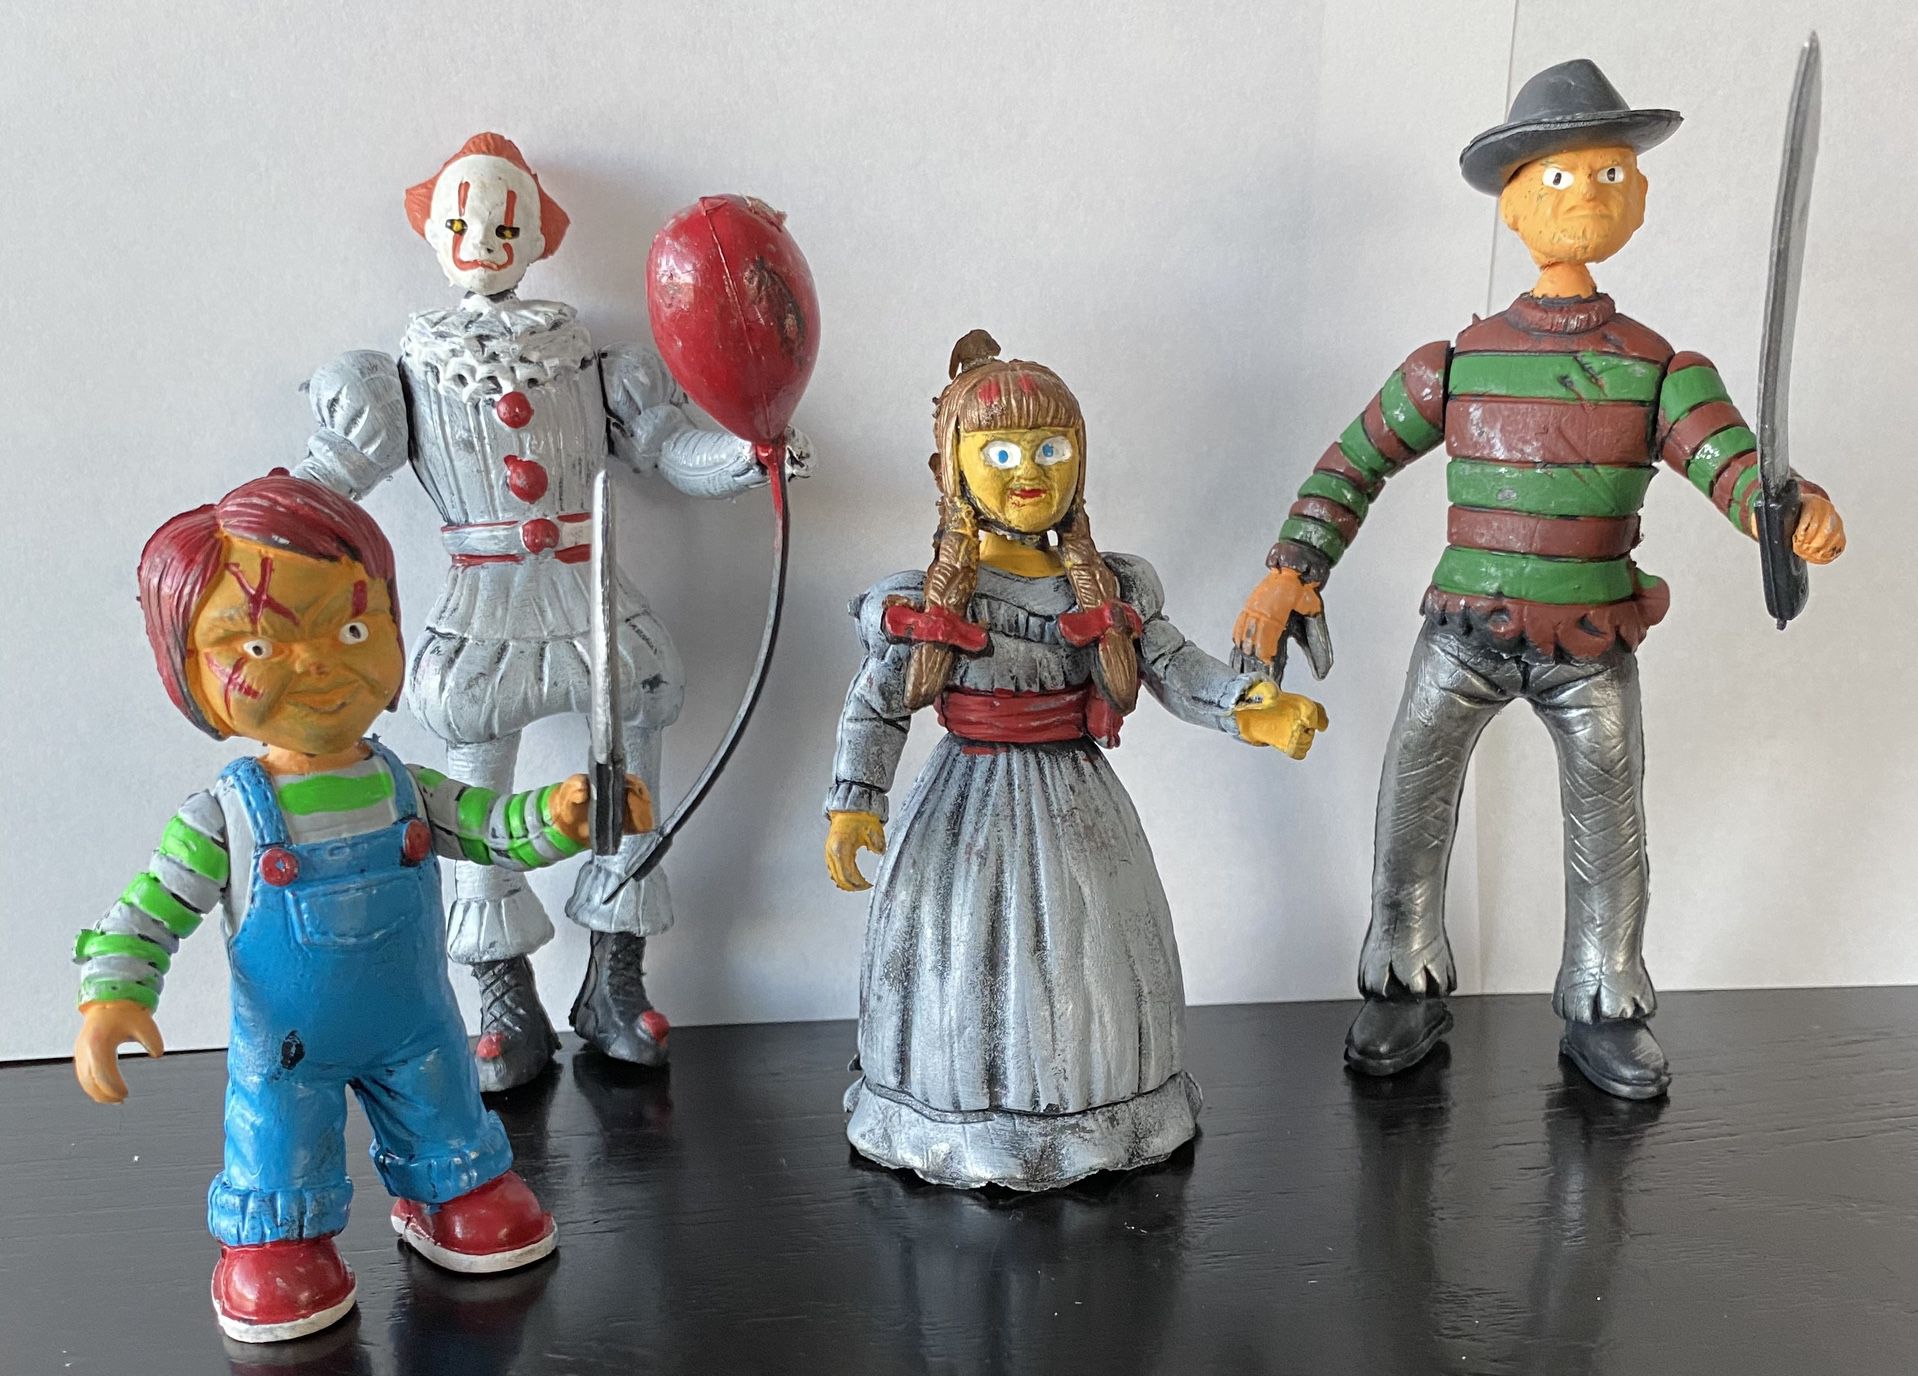 IT/Annabelle/Freddy Krueger Horror Action Figure Set Toys